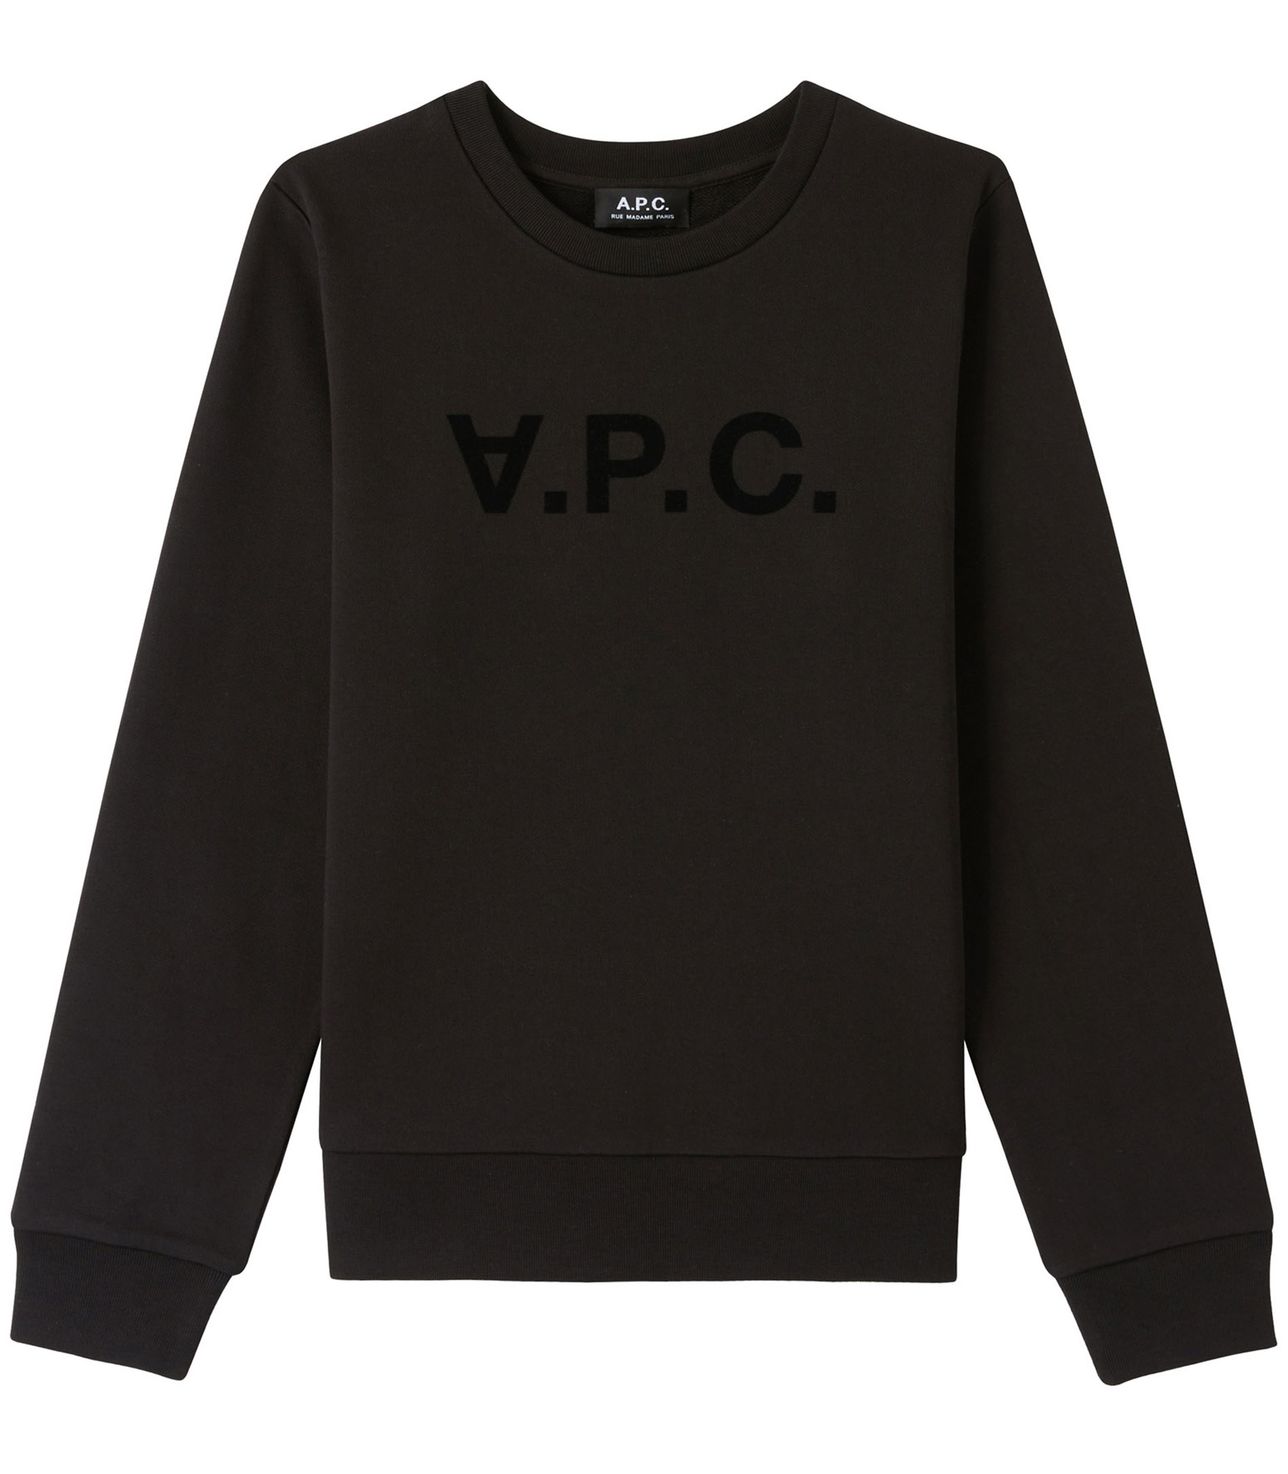 Viva sweatshirt BLACK APC